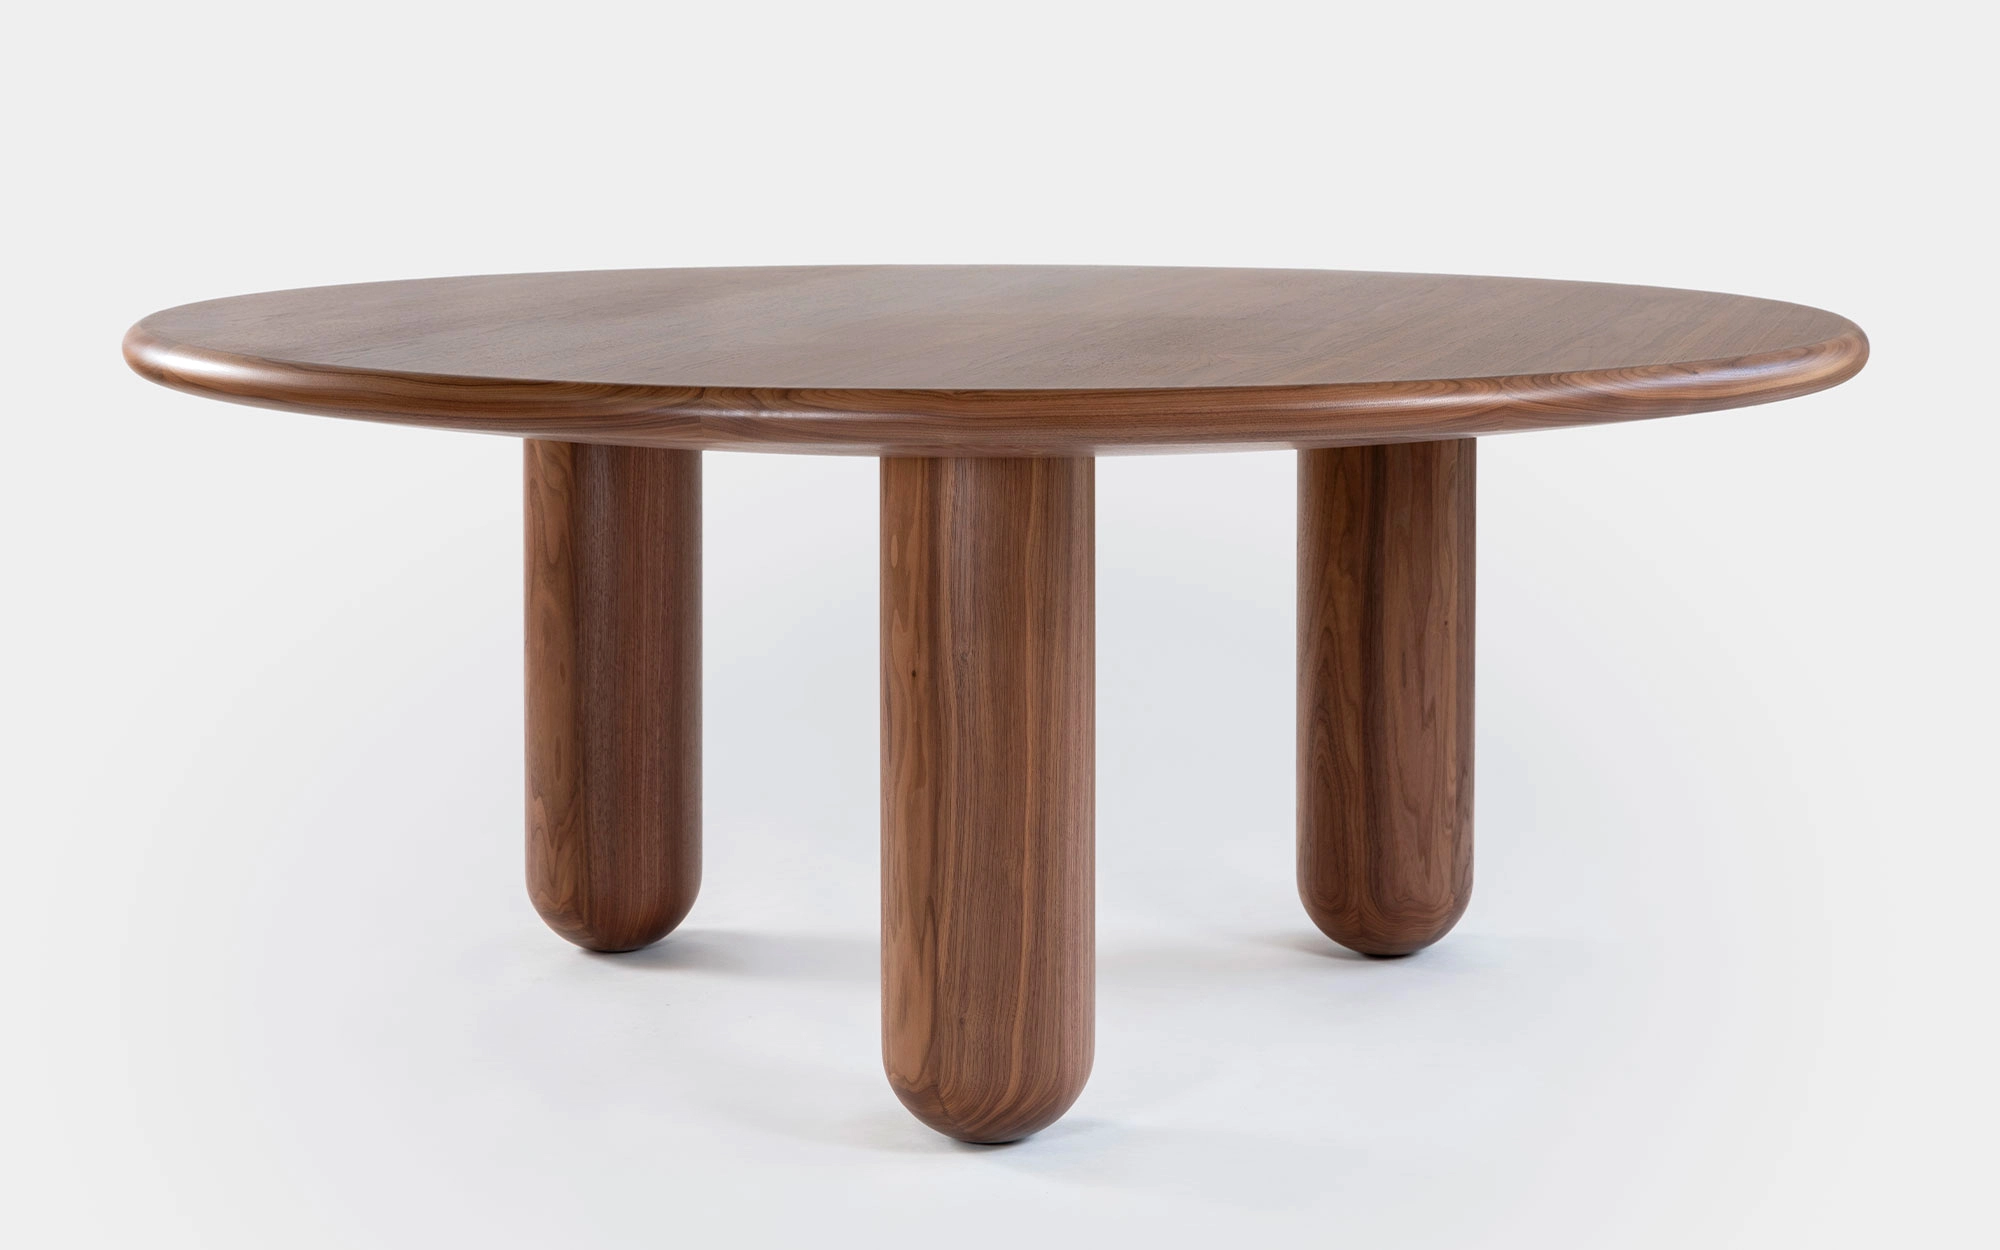 Organism table - Jaime Hayon - Side table - Galerie kreo